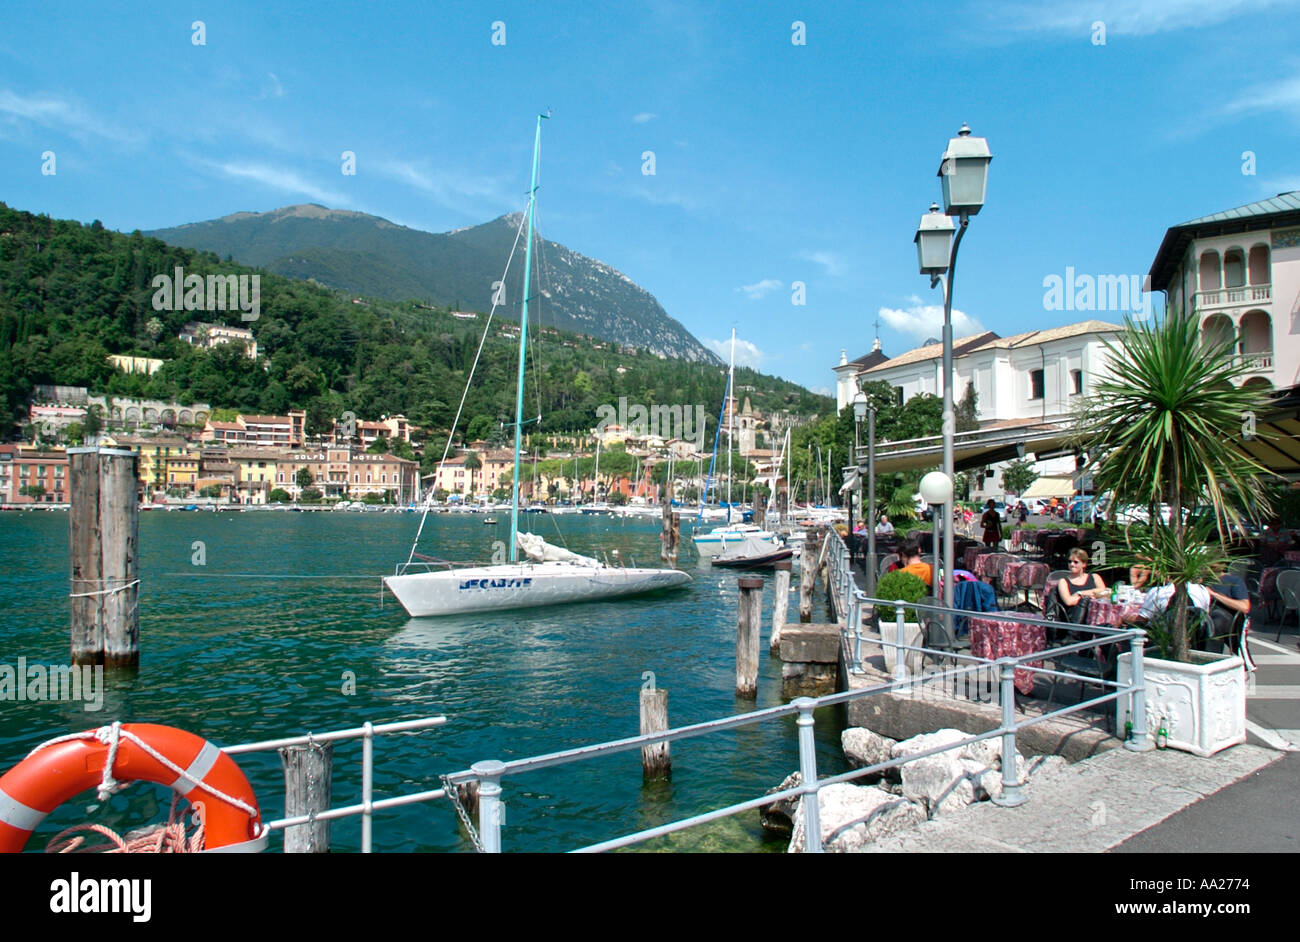 Cafe sul porto di Maderno, Lago di Garda, Italia Foto Stock